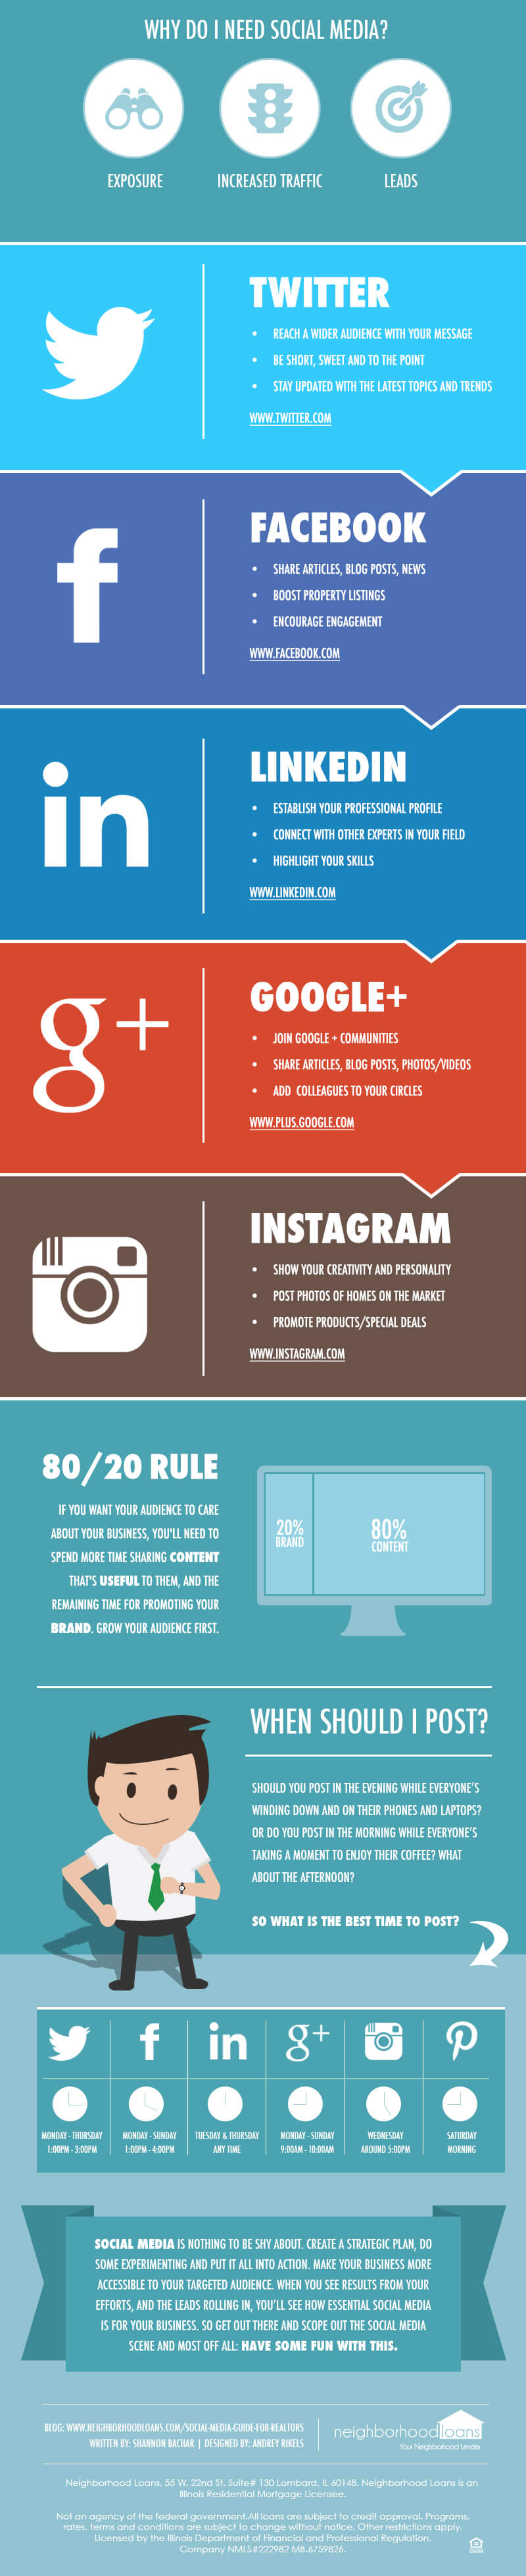 Social-Media-Infographic.jpg